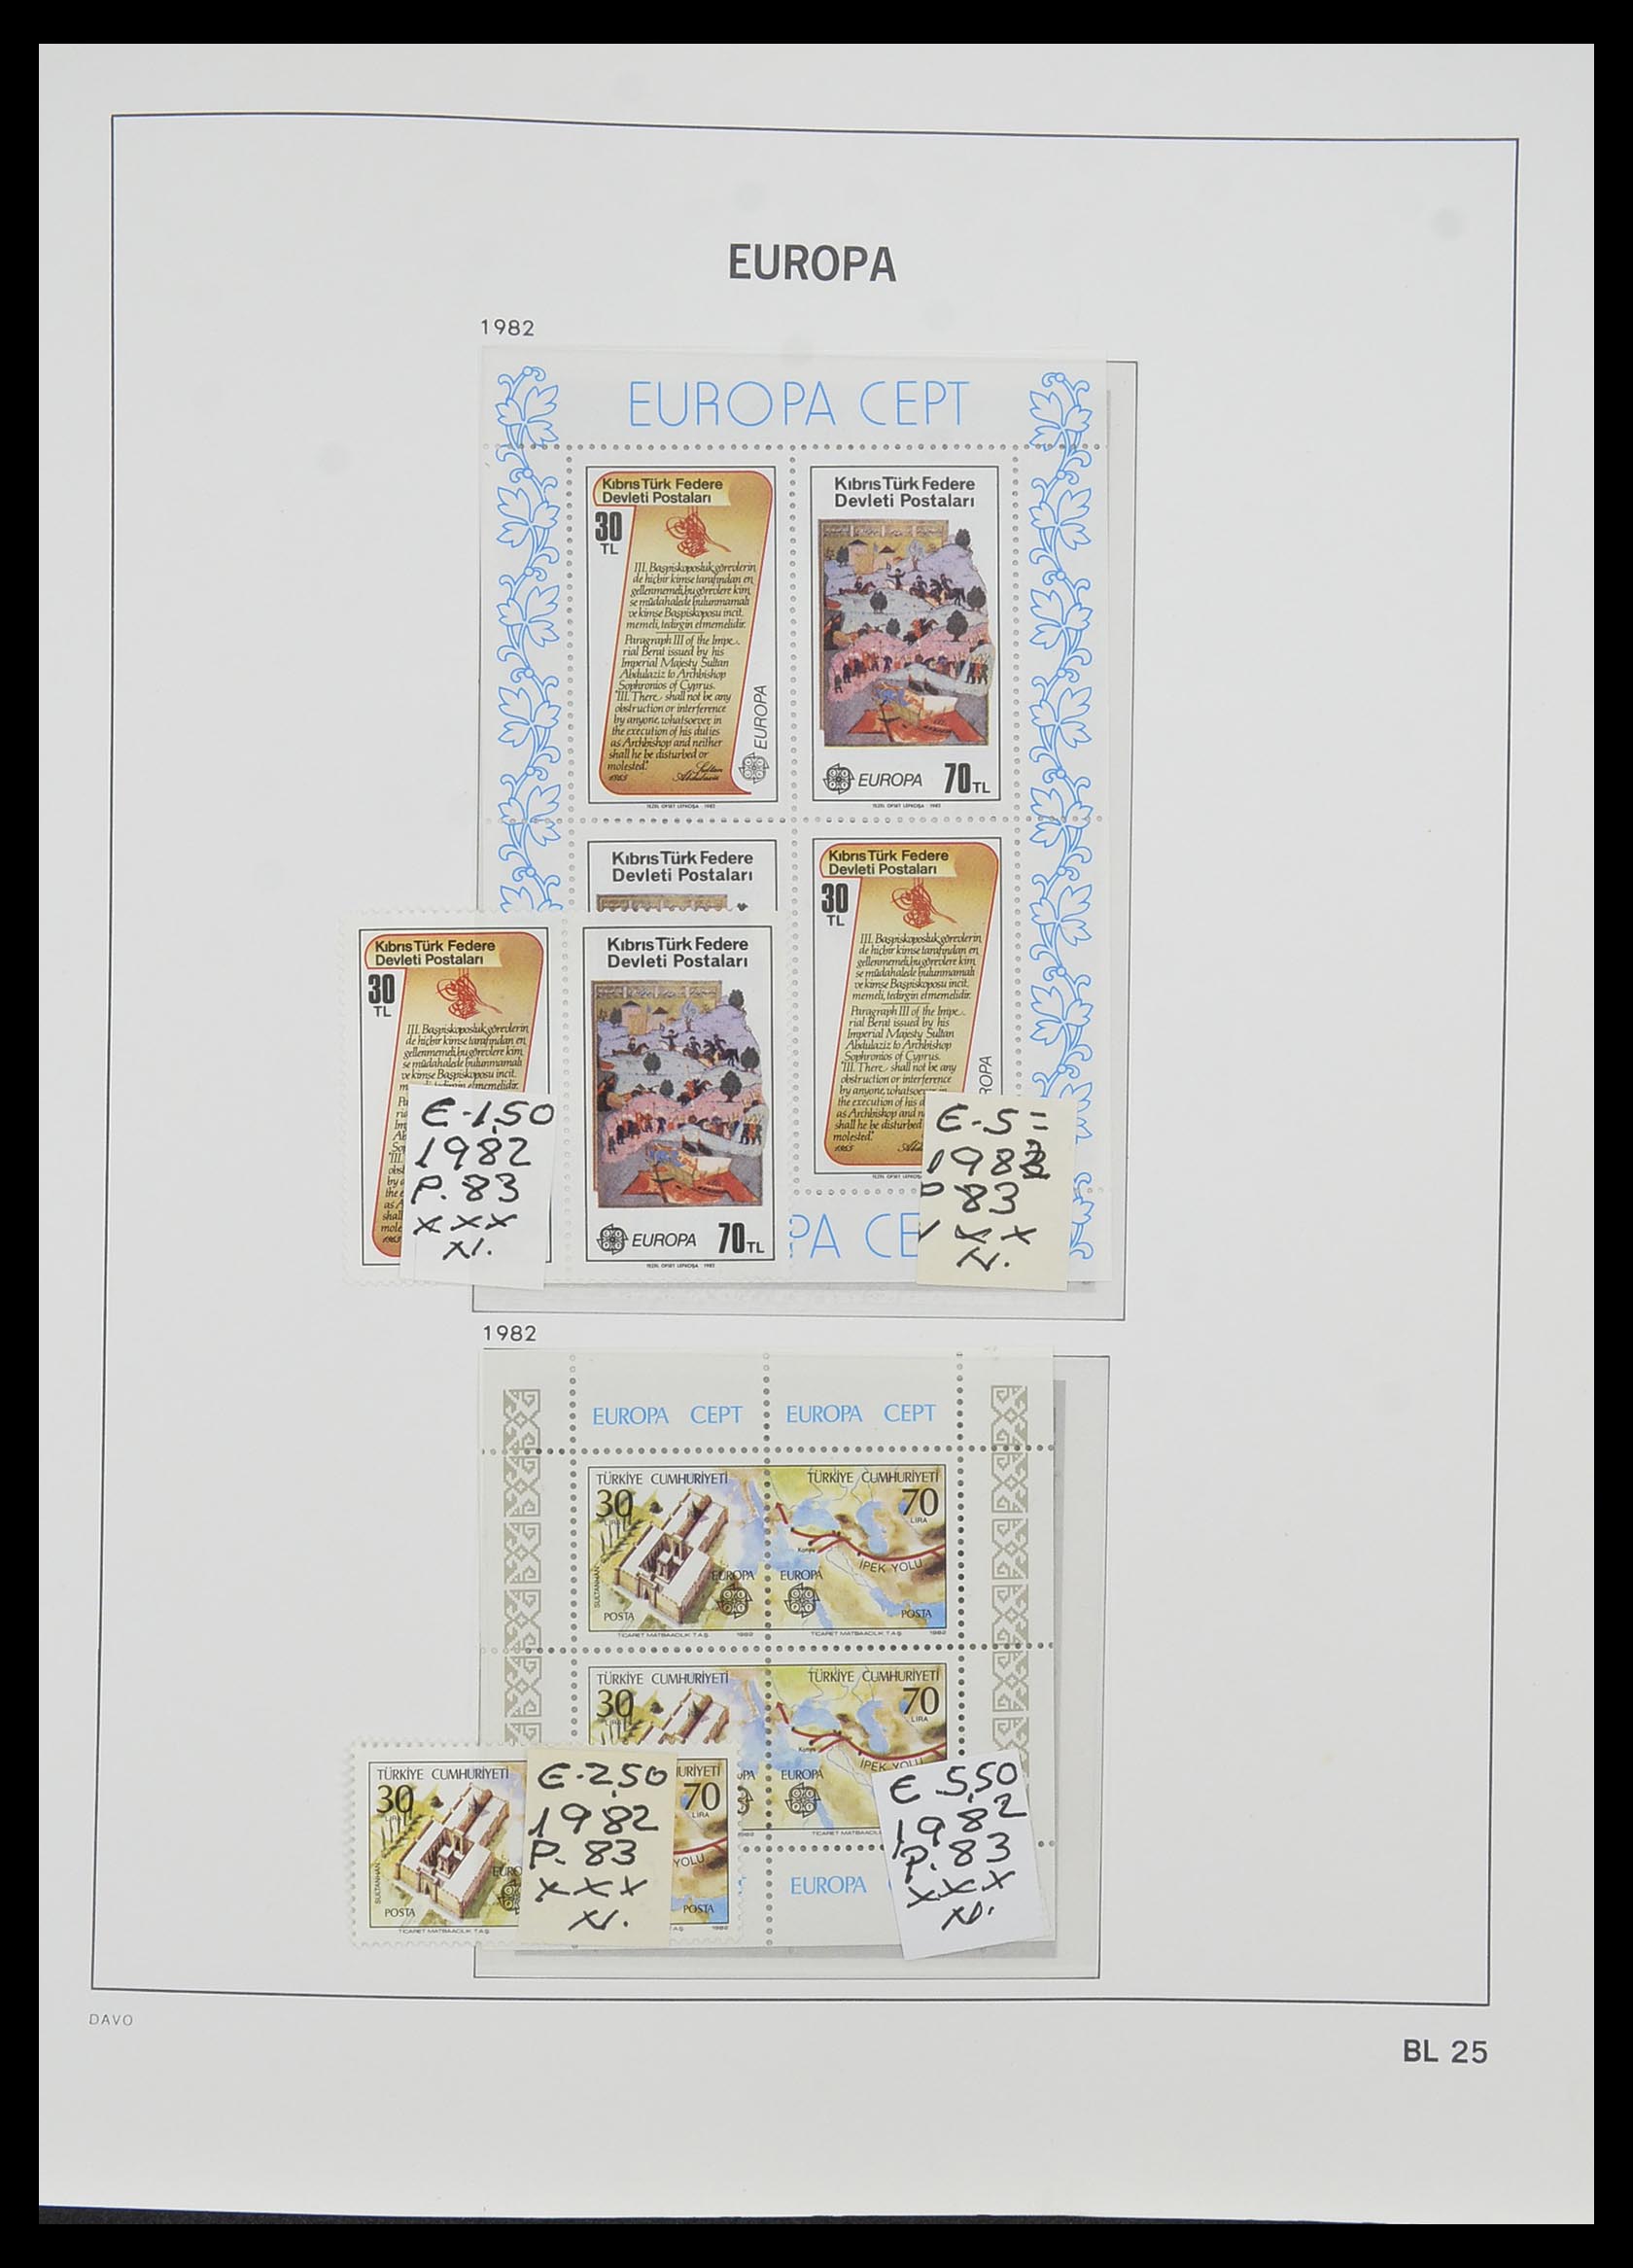 33985 025 - Stamp collection 33985 Europa CEPT souvenir sheets 1974-2014.